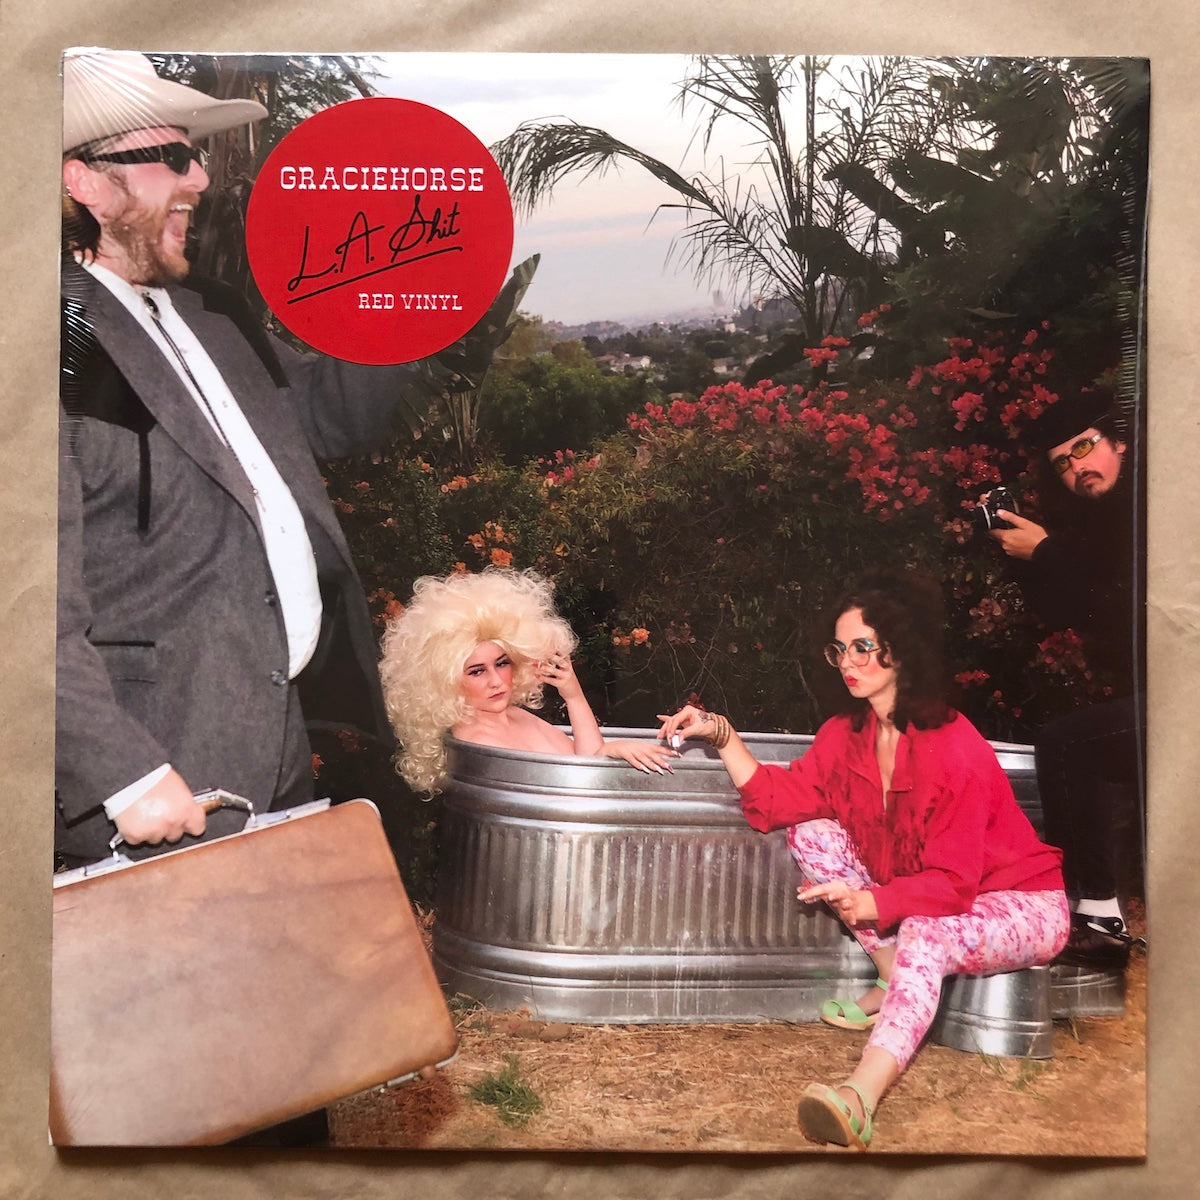 L.A. Shit: Red Vinyl LP